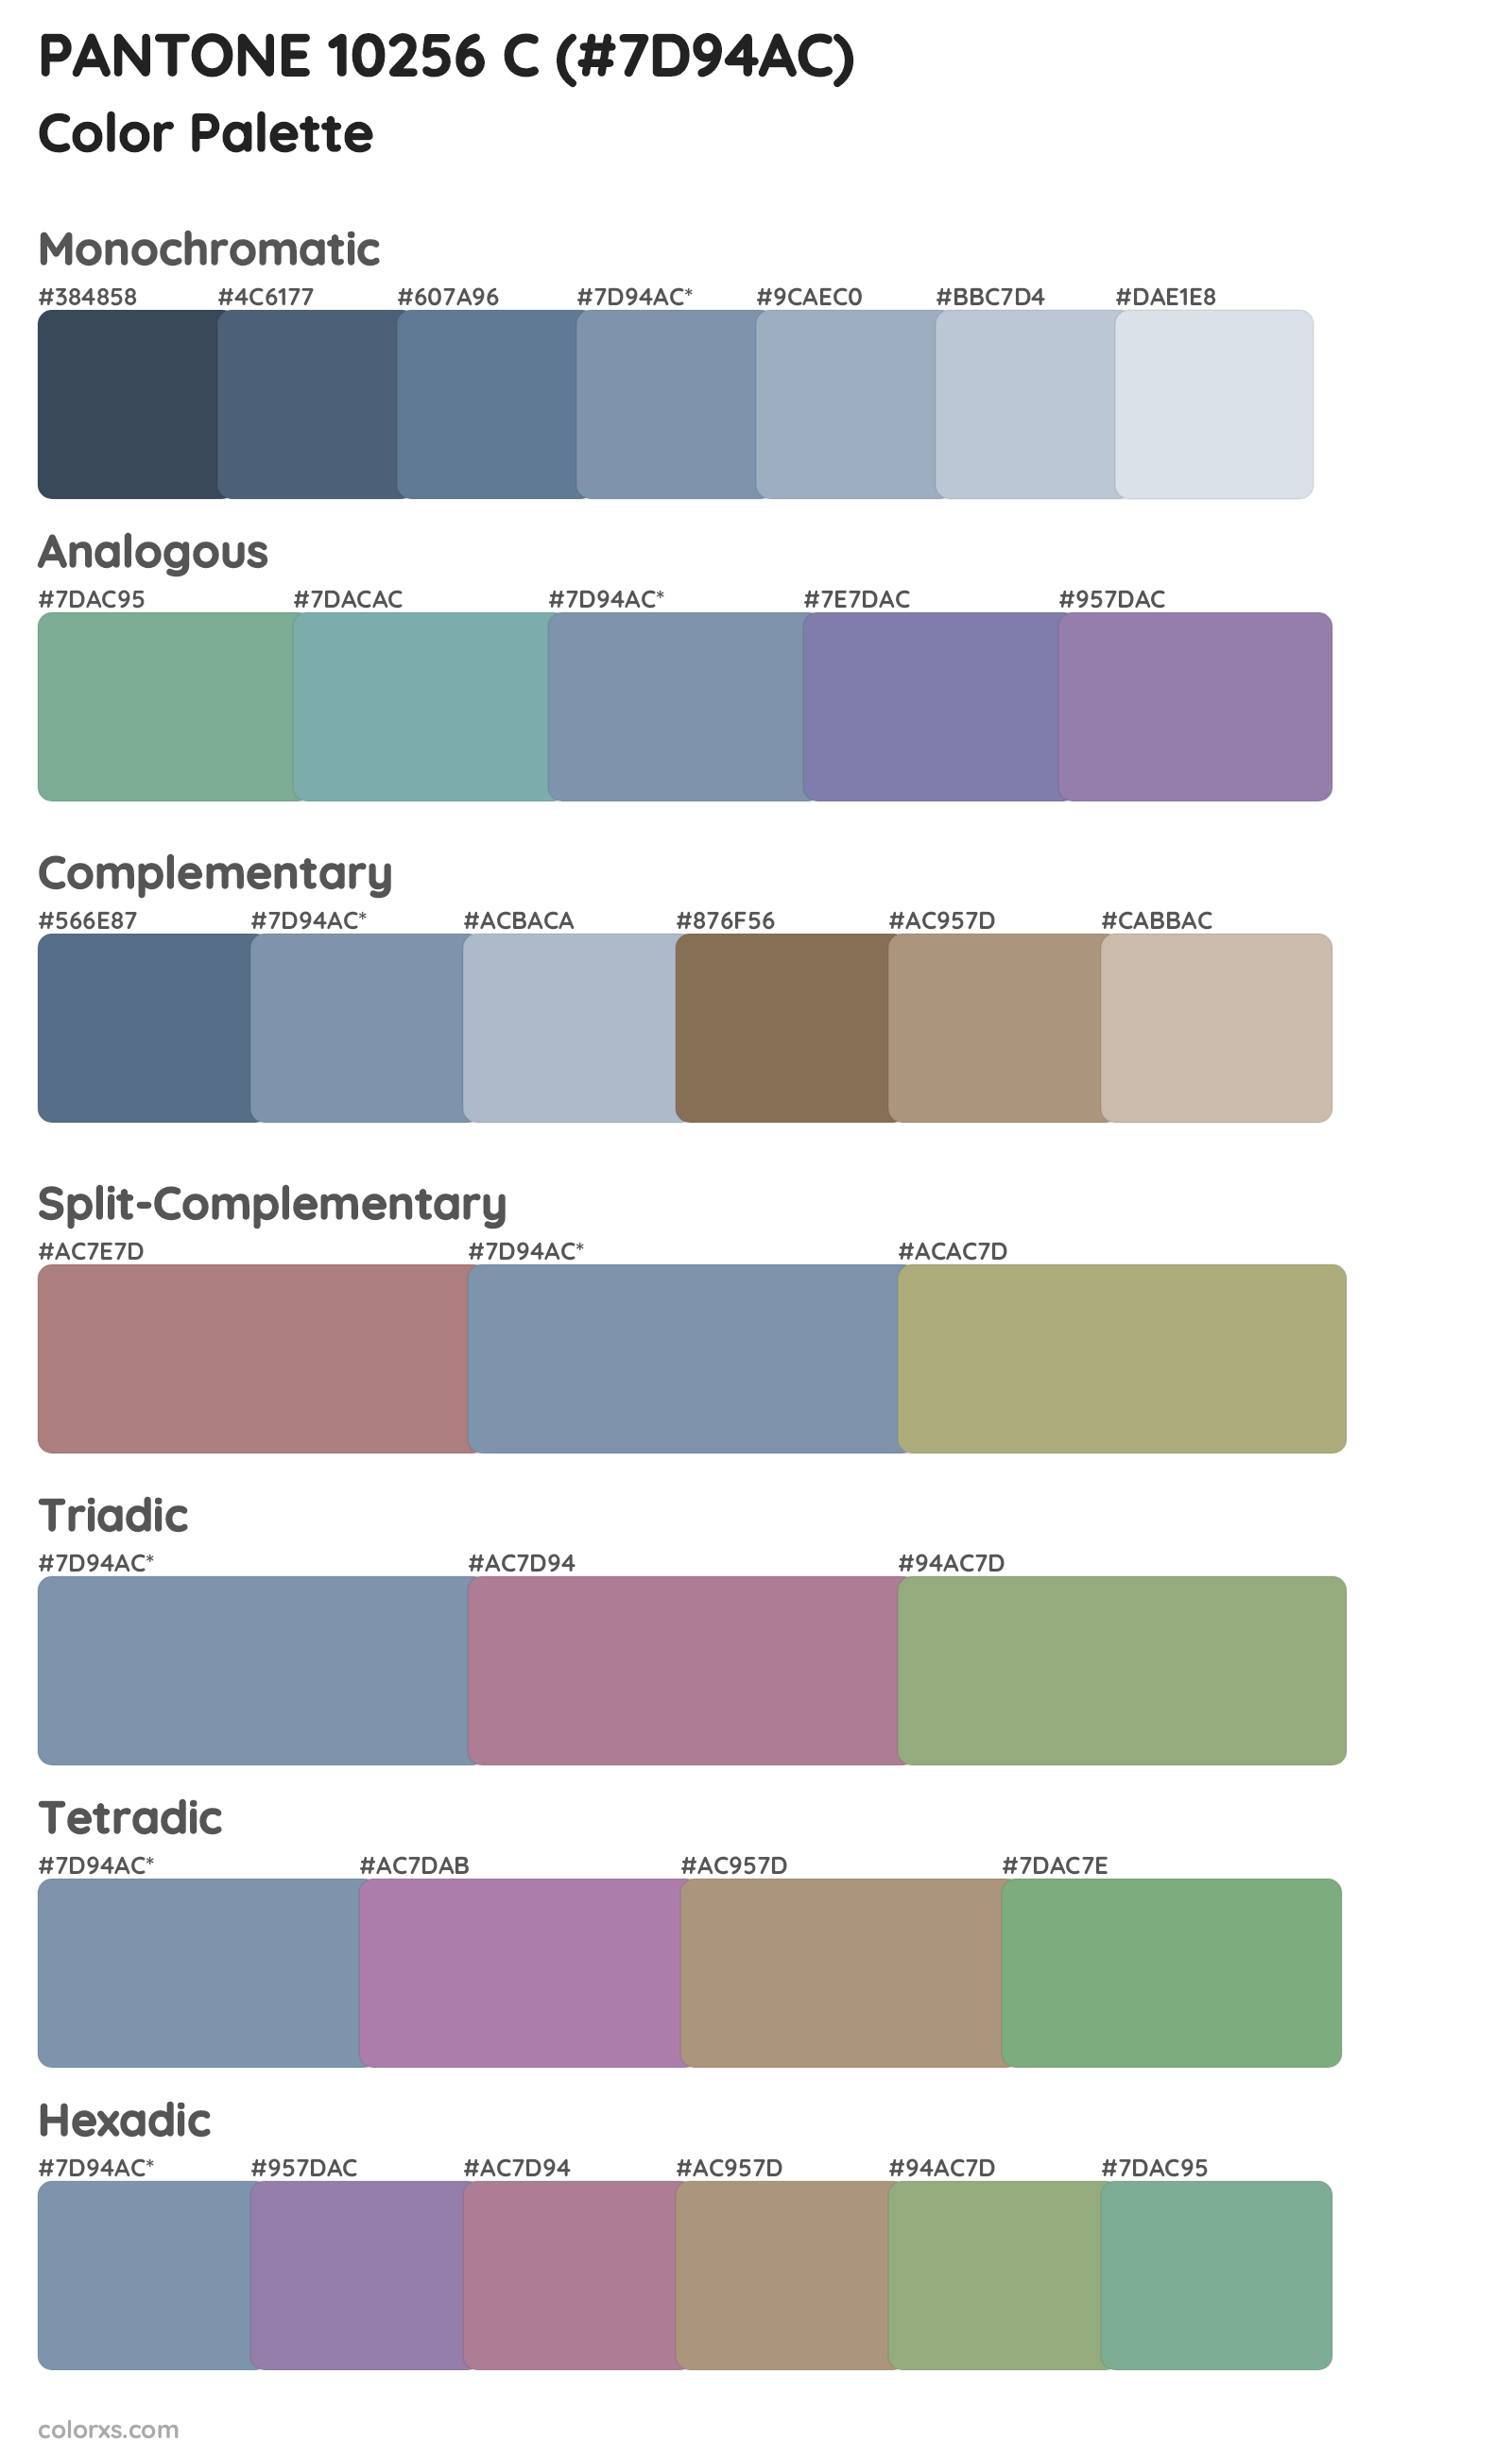 PANTONE 10256 C Color Scheme Palettes